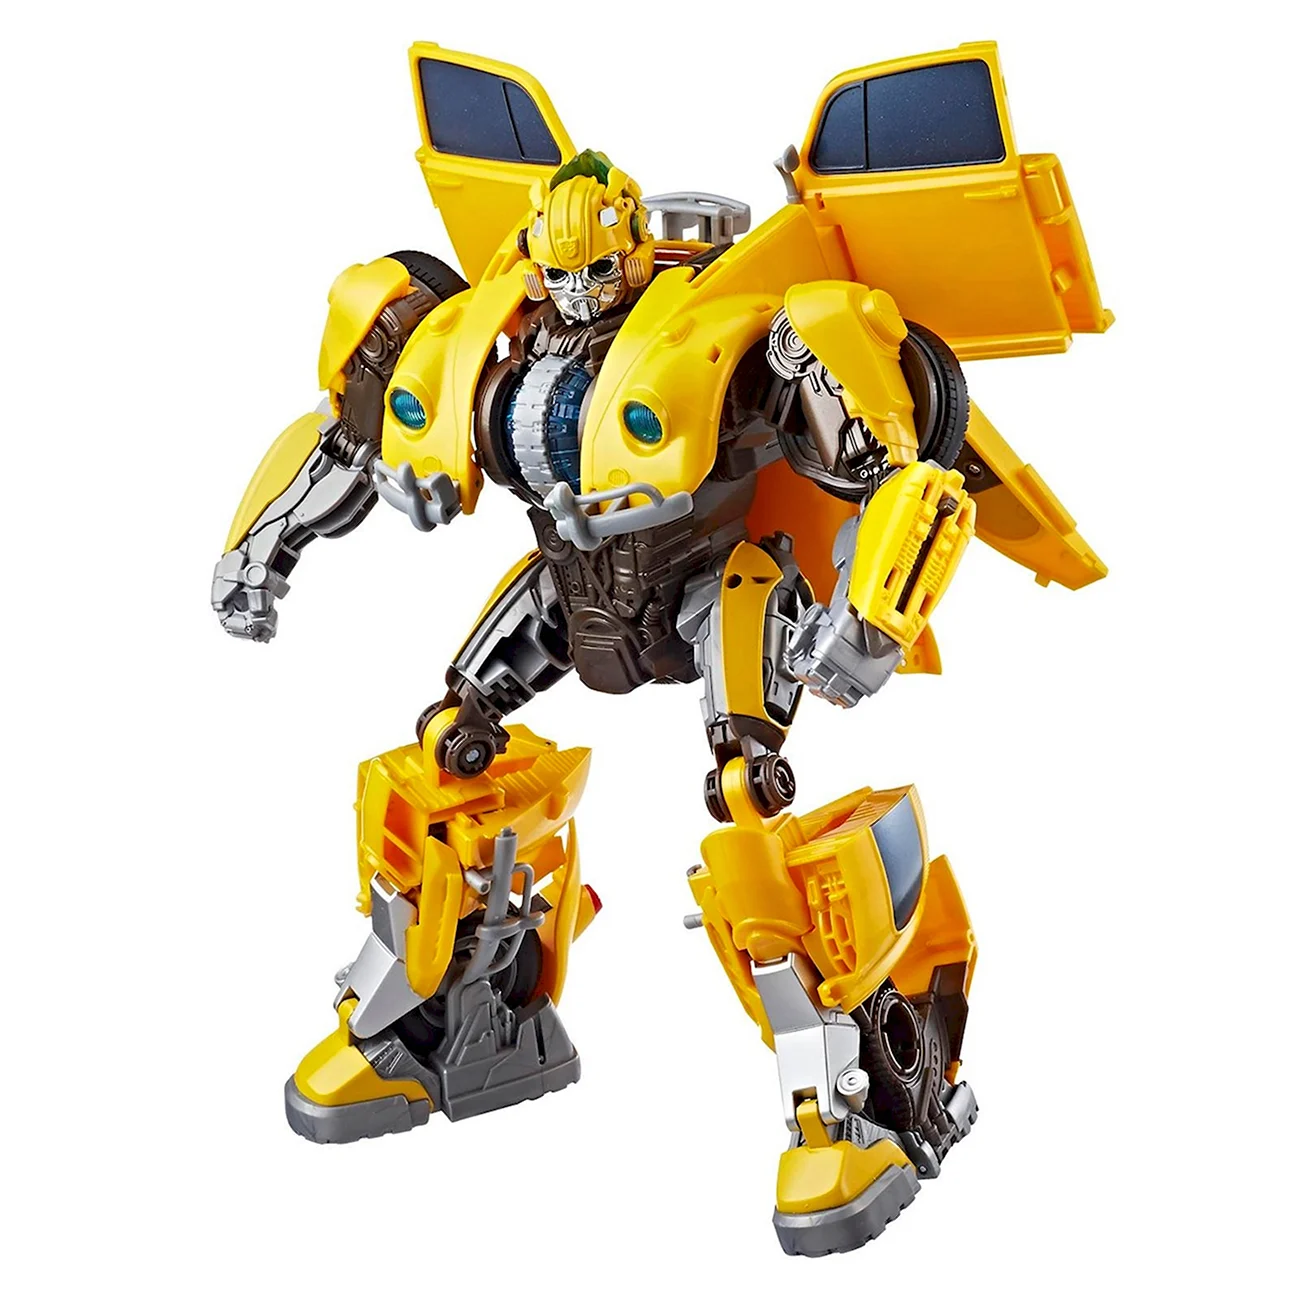 Hasbro Transformers e0982 трансформеры заряженный Бамблби. Картинка